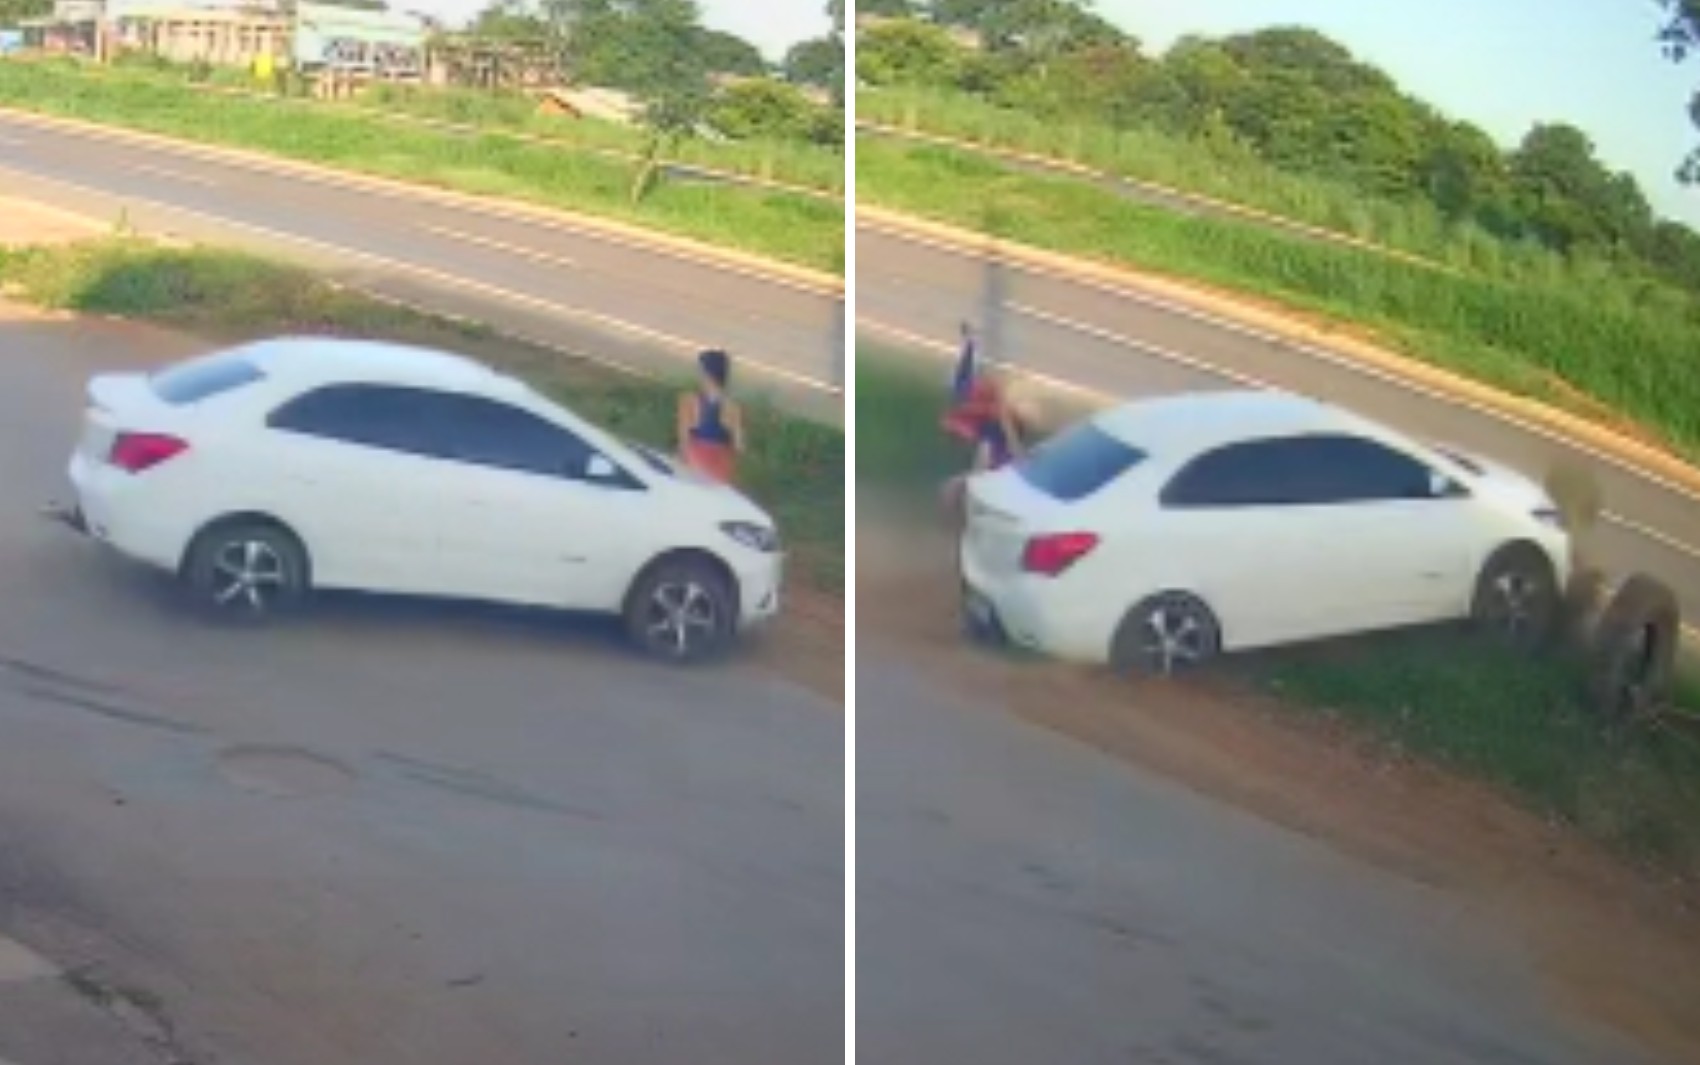 Vídeo mostra quando motorista atinge em cheio mulher que caminhava por avenida e capota carro após confundir freio com acelerador, diz testemunha